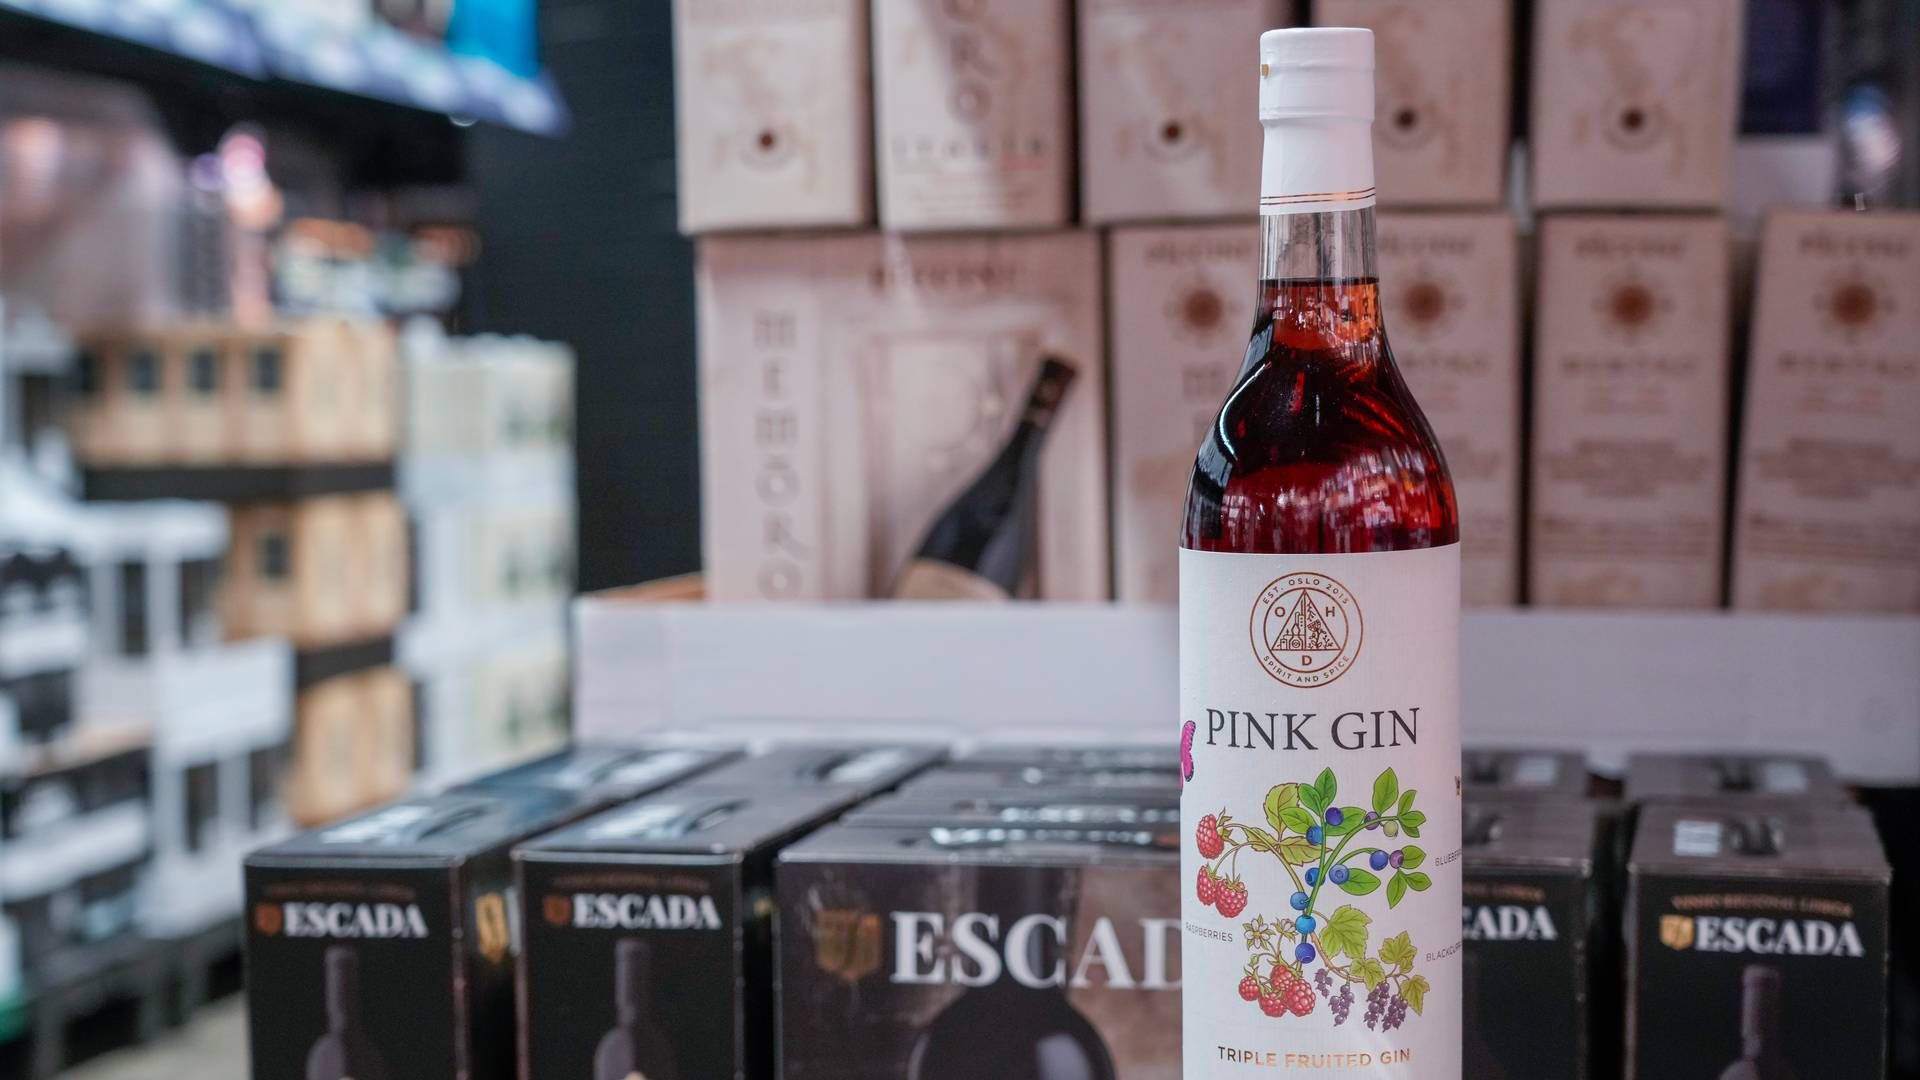 Vinmonopolet har stoppet salget av ginen som er produsert til bryllupet til prinsesse Märtha Louise og Durek Verrett. | Foto: Terje Bendiksby / NTB